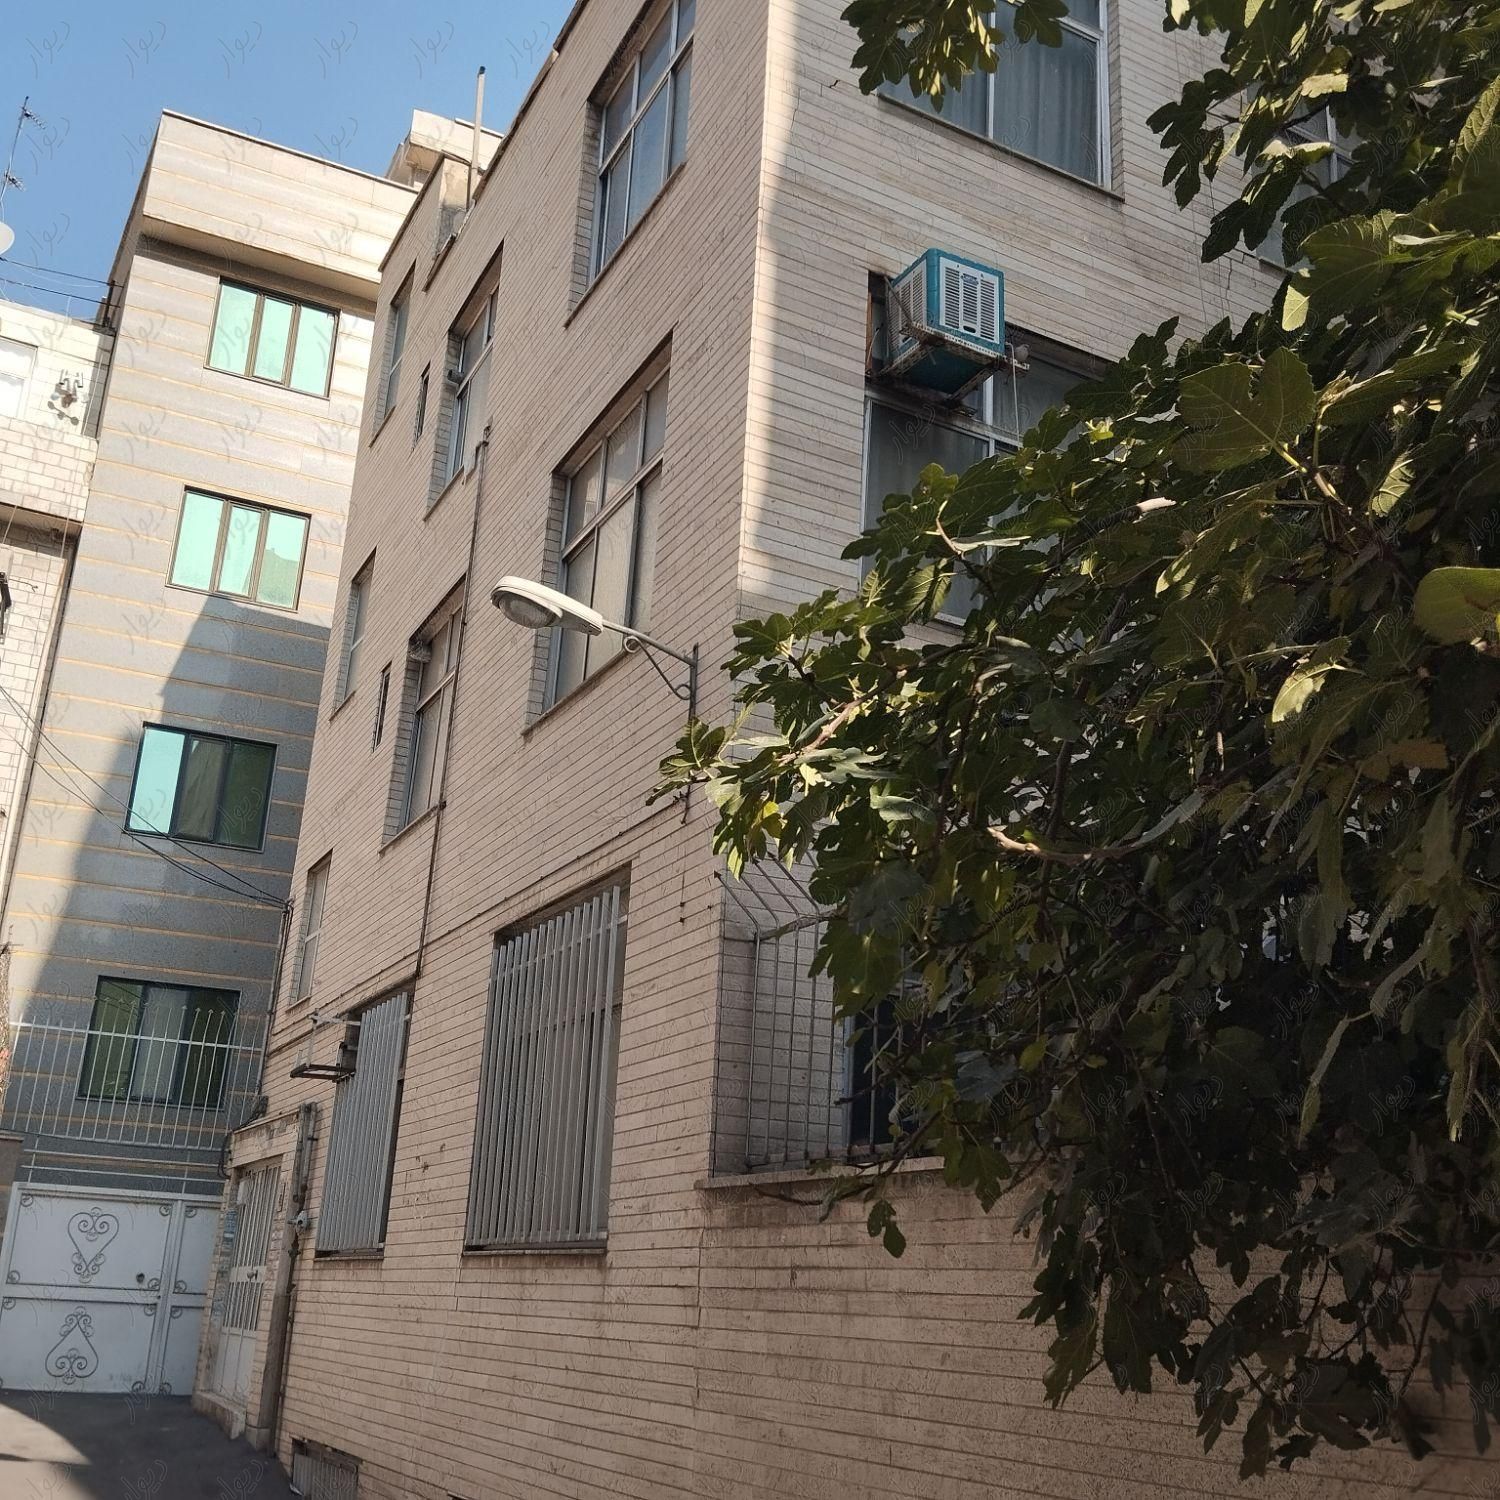 خانه کلنگی ۹۰ متری بره ۱۶ متر بافت فرسوده بریانک|فروش زمین و کلنگی|تهران, بریانک|دیوار